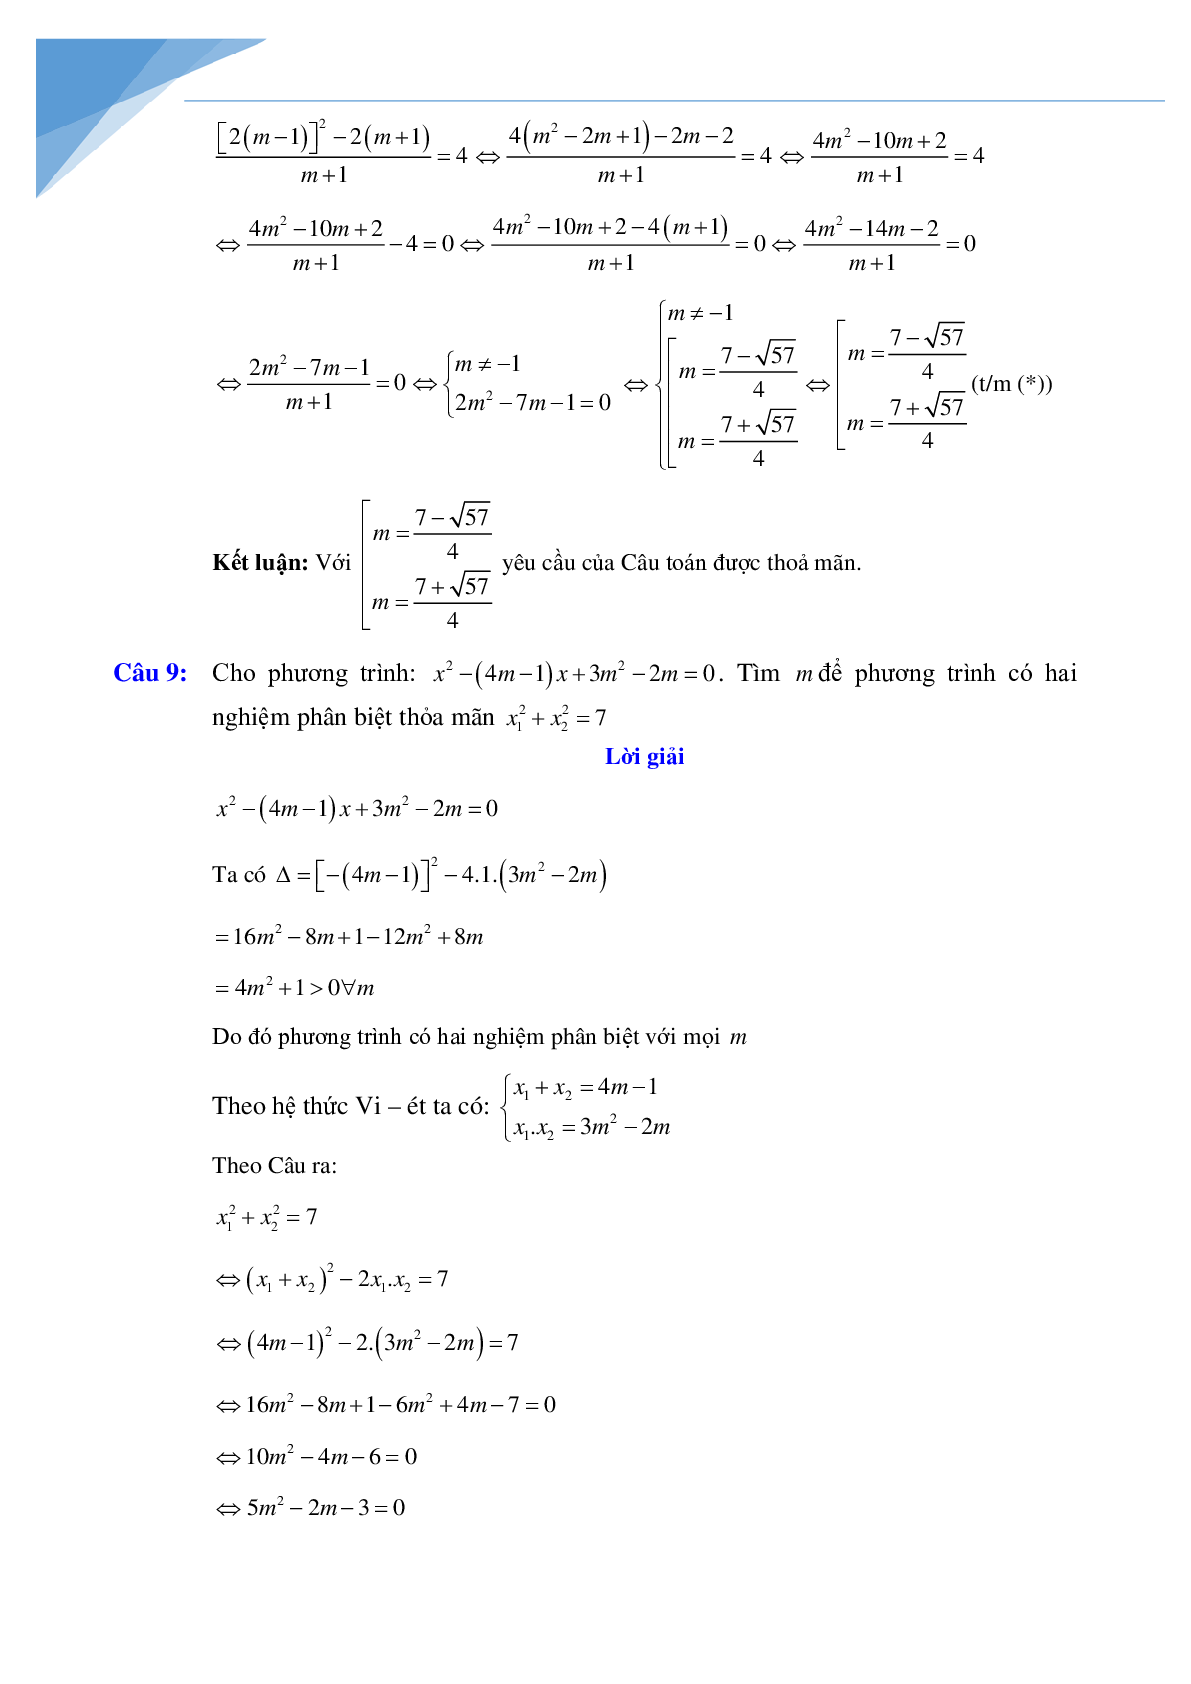 Chuyên đề vi-et luyện thi vào lớp 10 môn toán (trang 8)